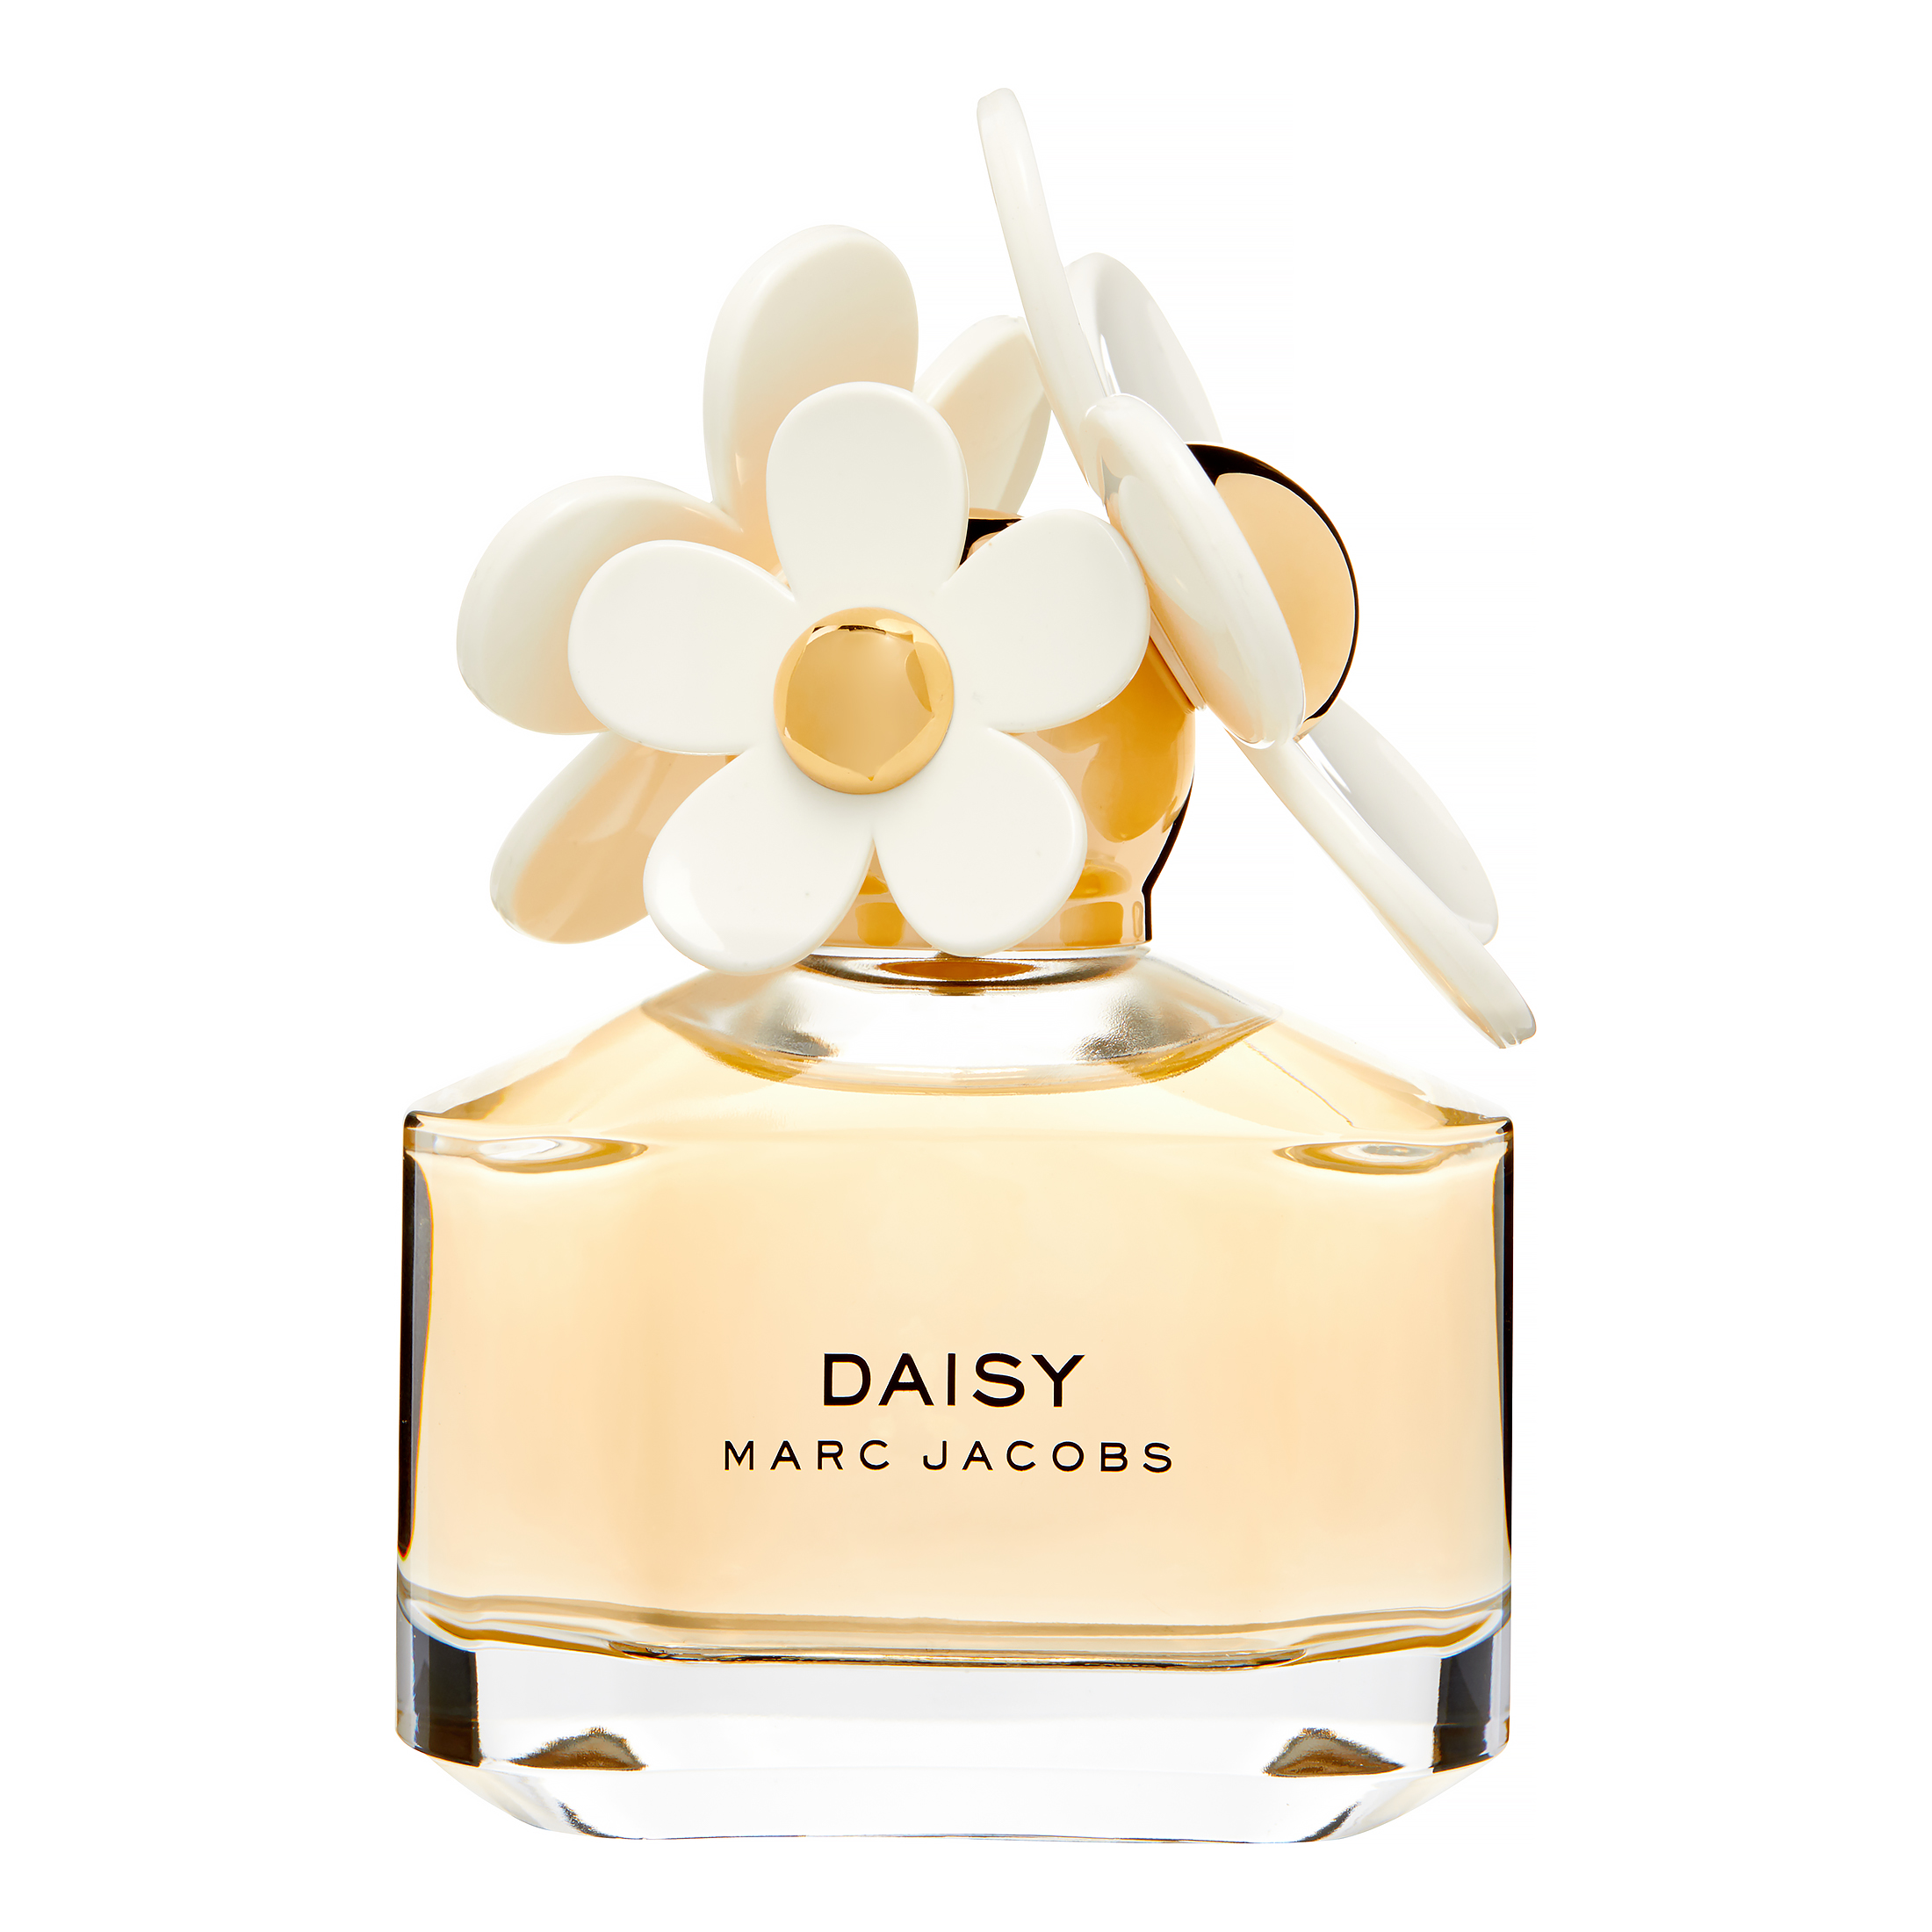 Marc Jacobs Daisy Eau De Toilette, Perfume for Women, 1.7 Oz - image 1 of 8